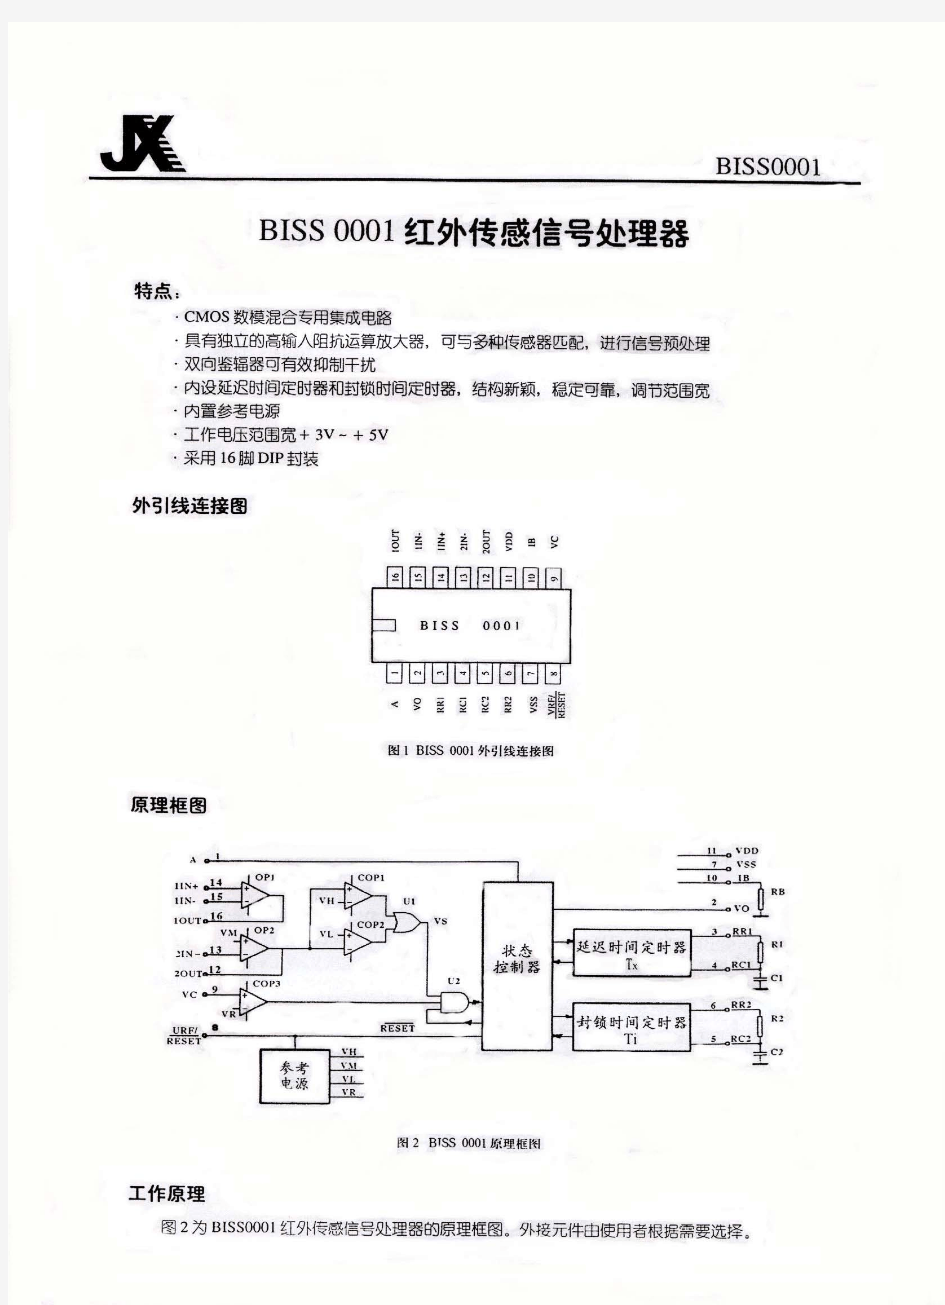 BISS0001红外传感信号处理器